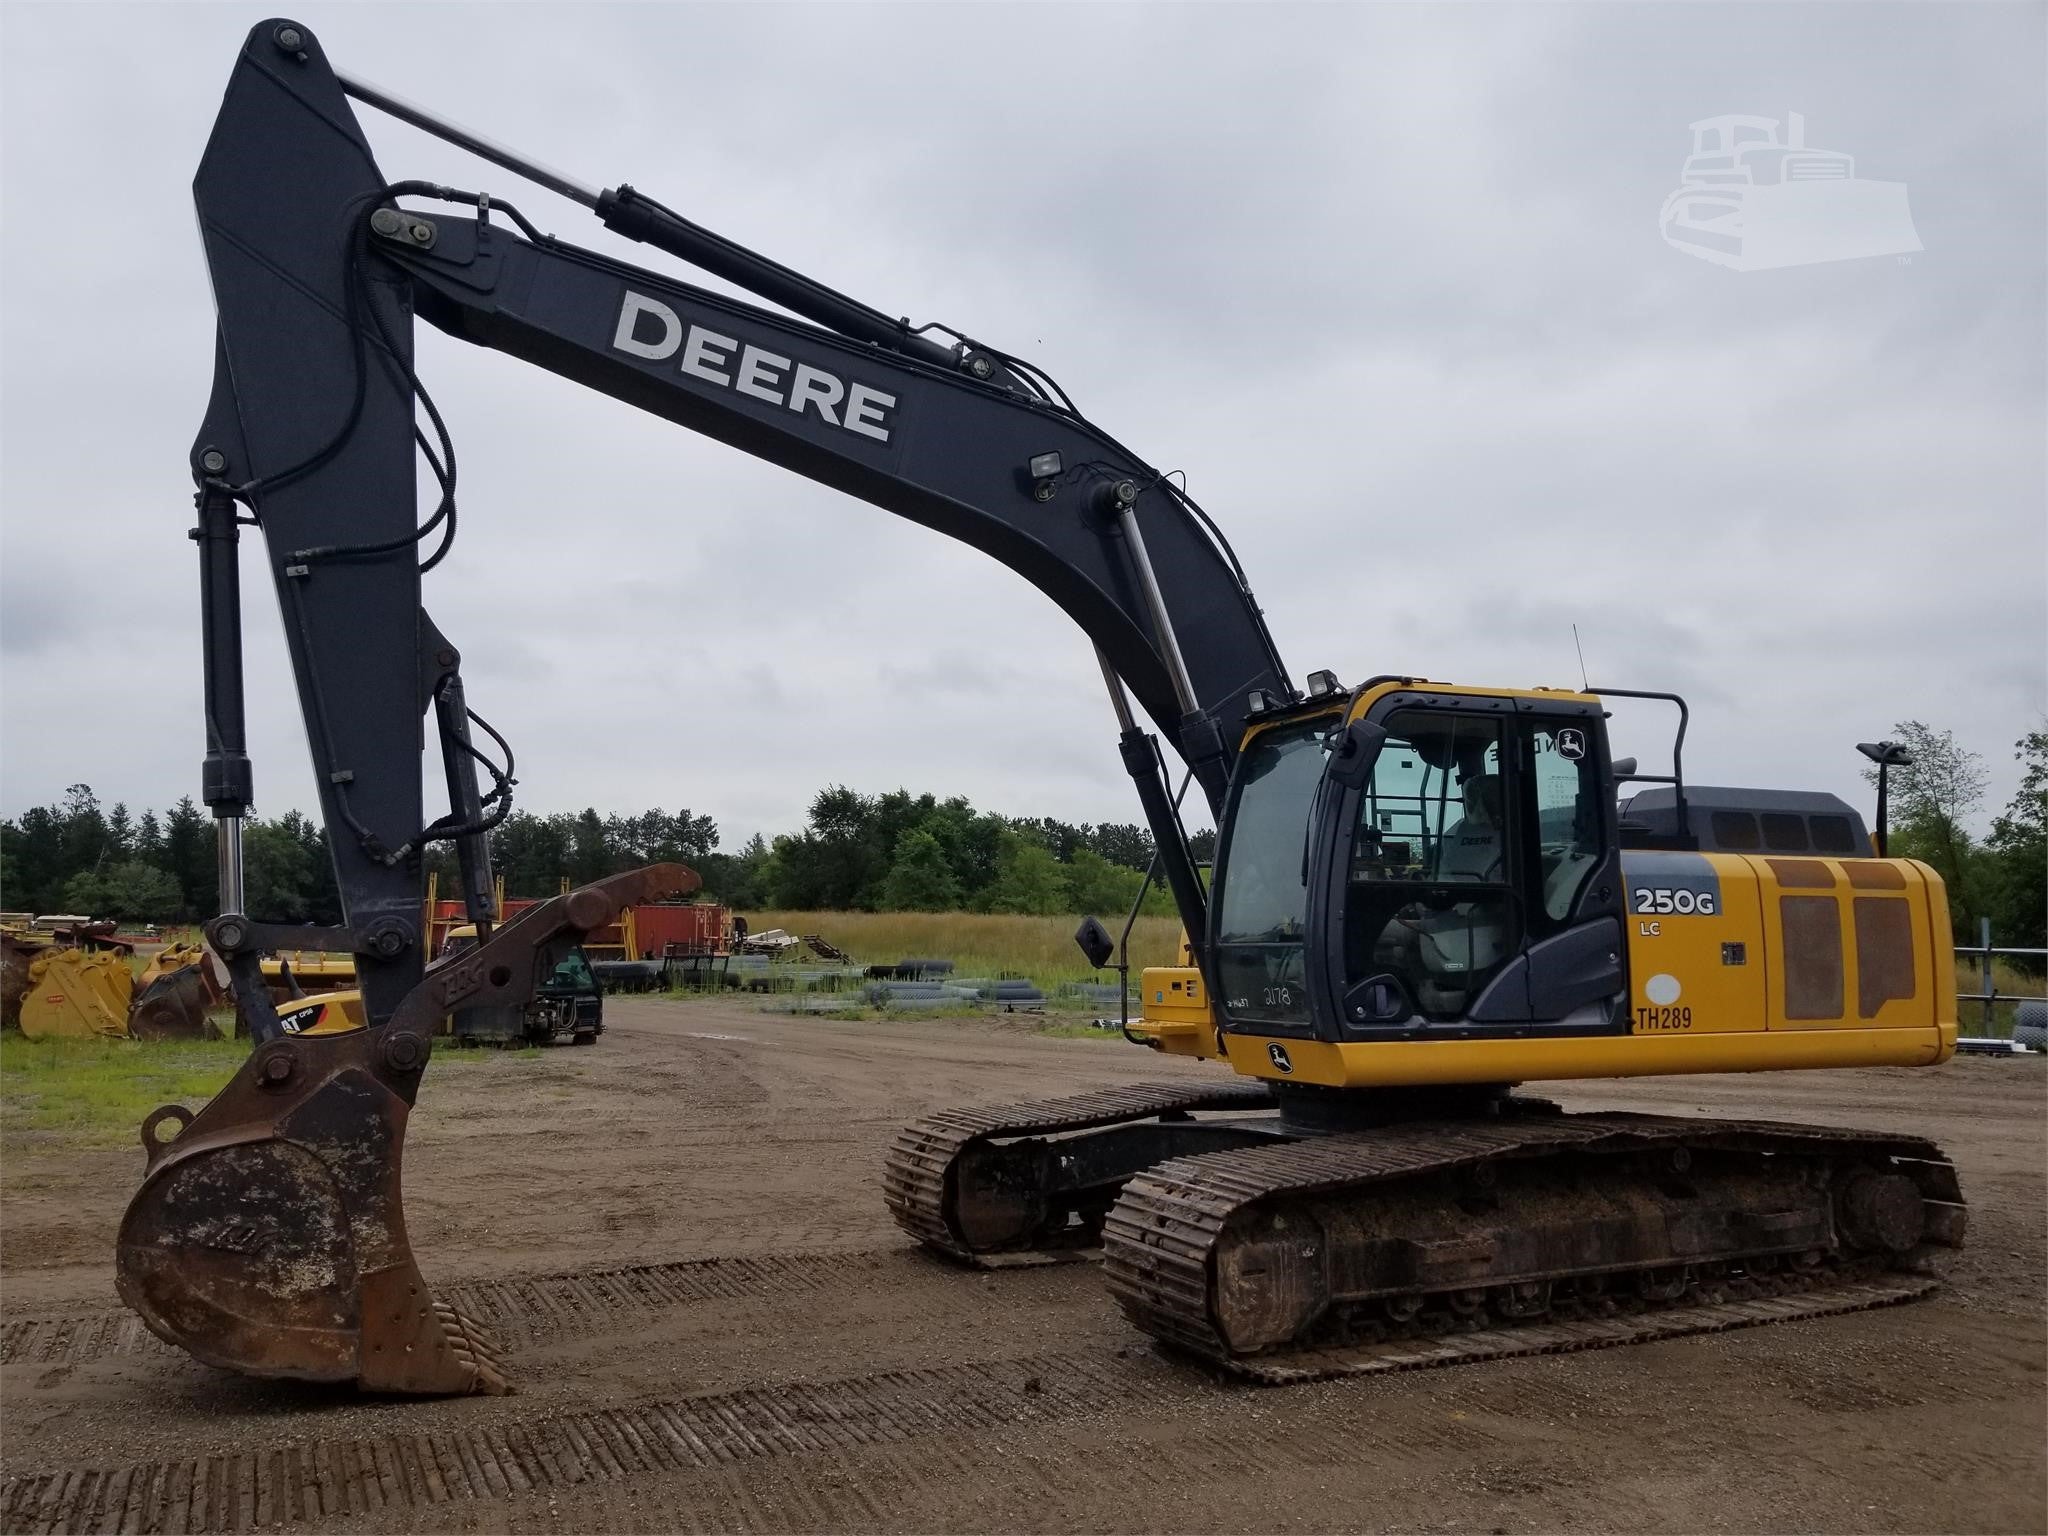 Deere 250G Excavator